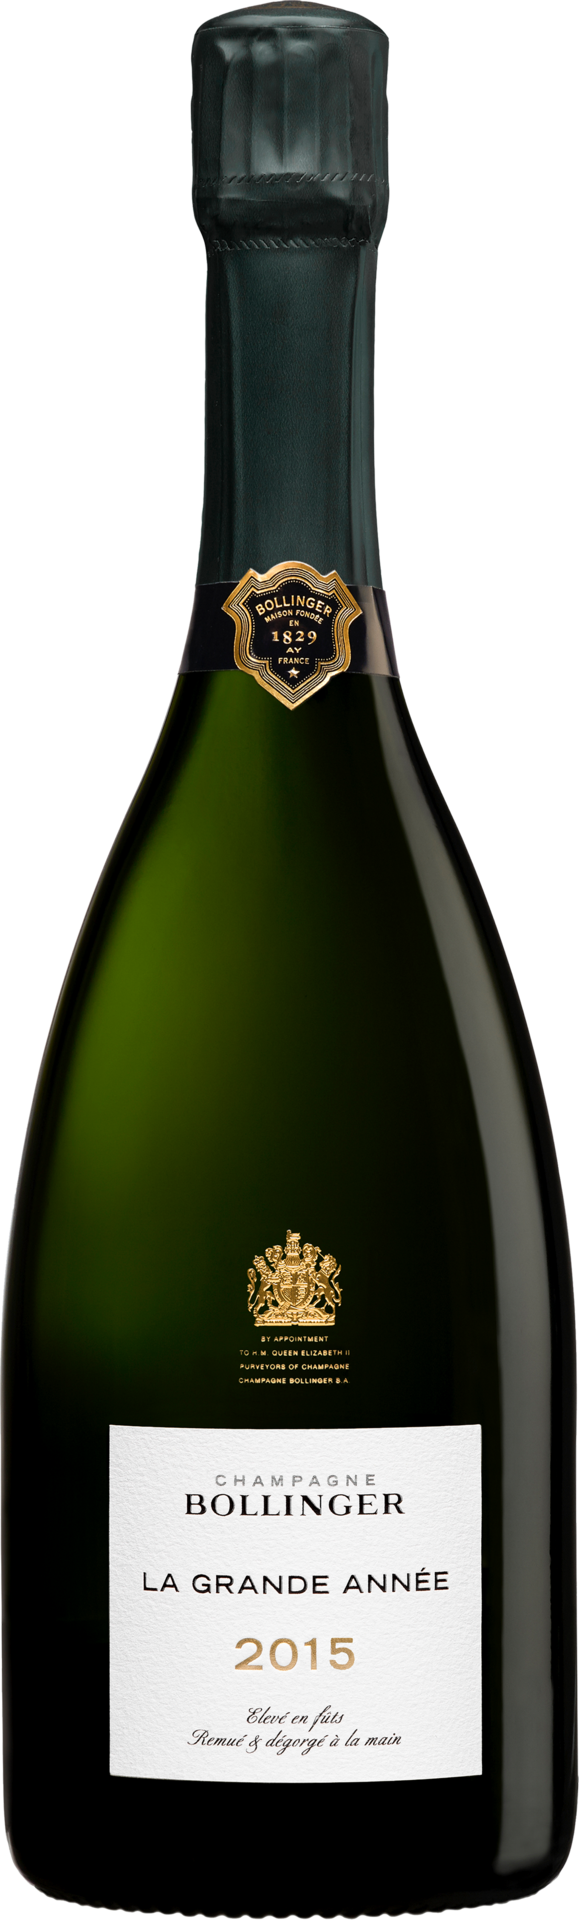 Champagne Bollinger La Grande Année - 2015